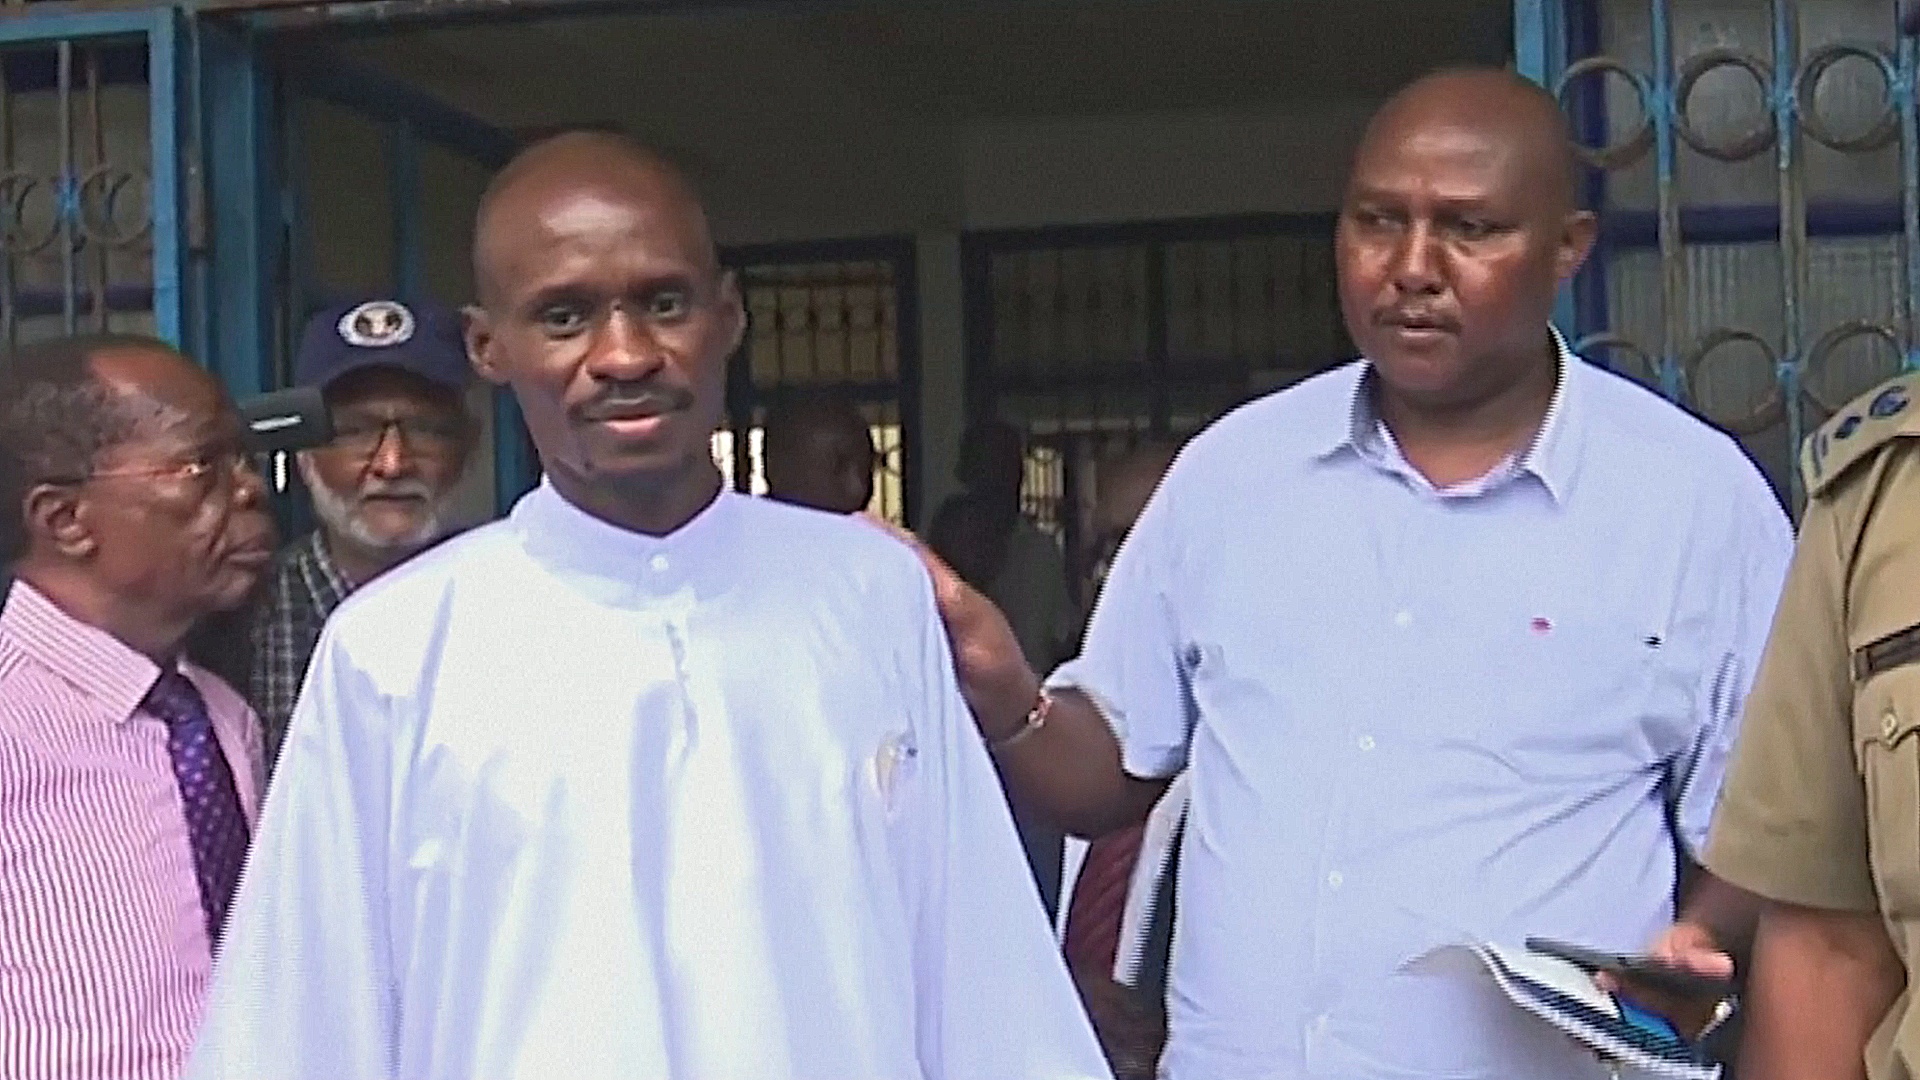 Второй случай возможного массового убийства в церкви выявили в Кении